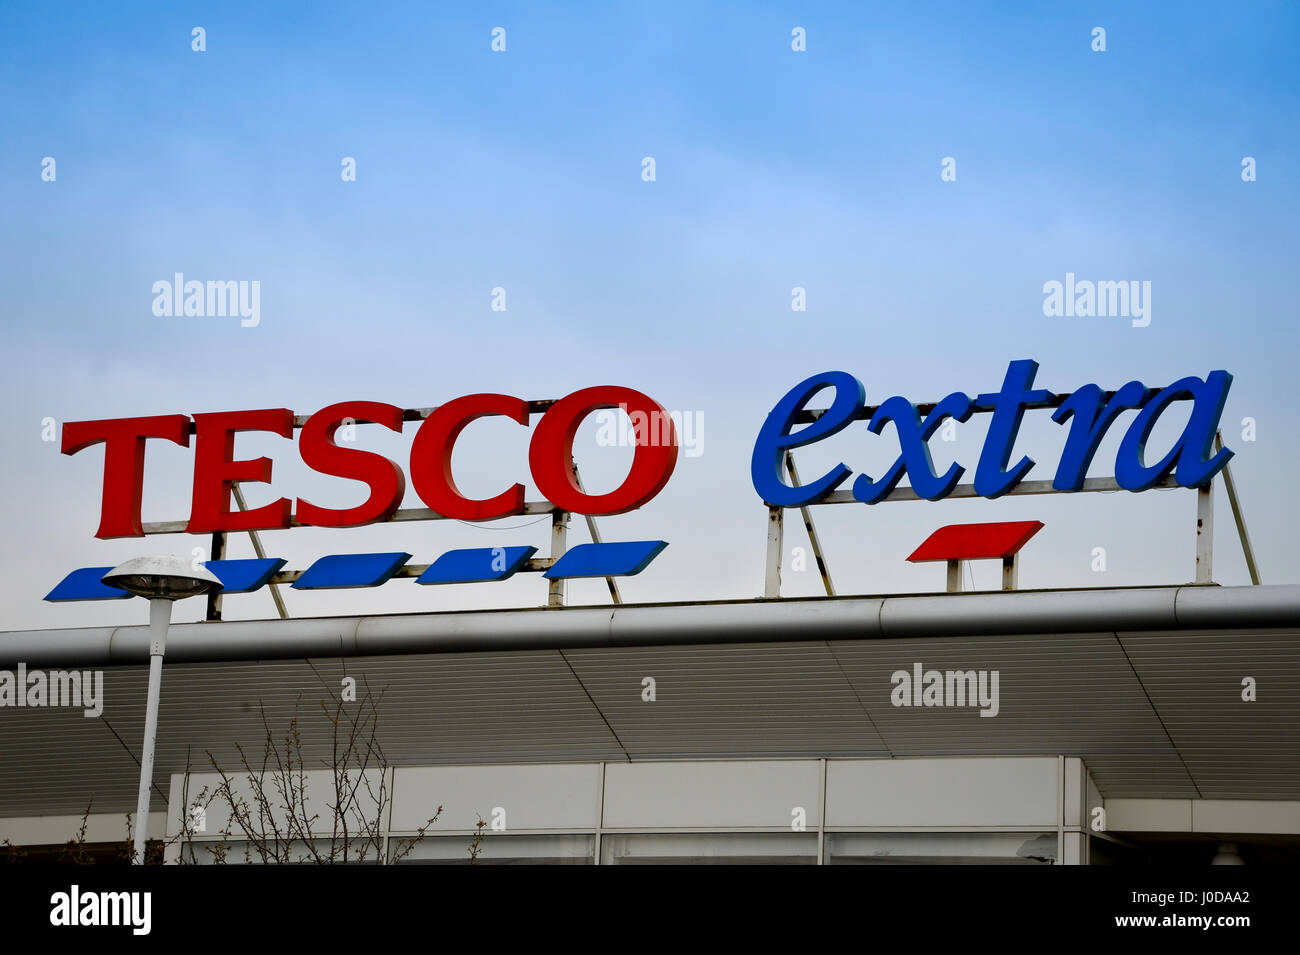 Tesco Extra Supermarkt Zeichen Stockfoto